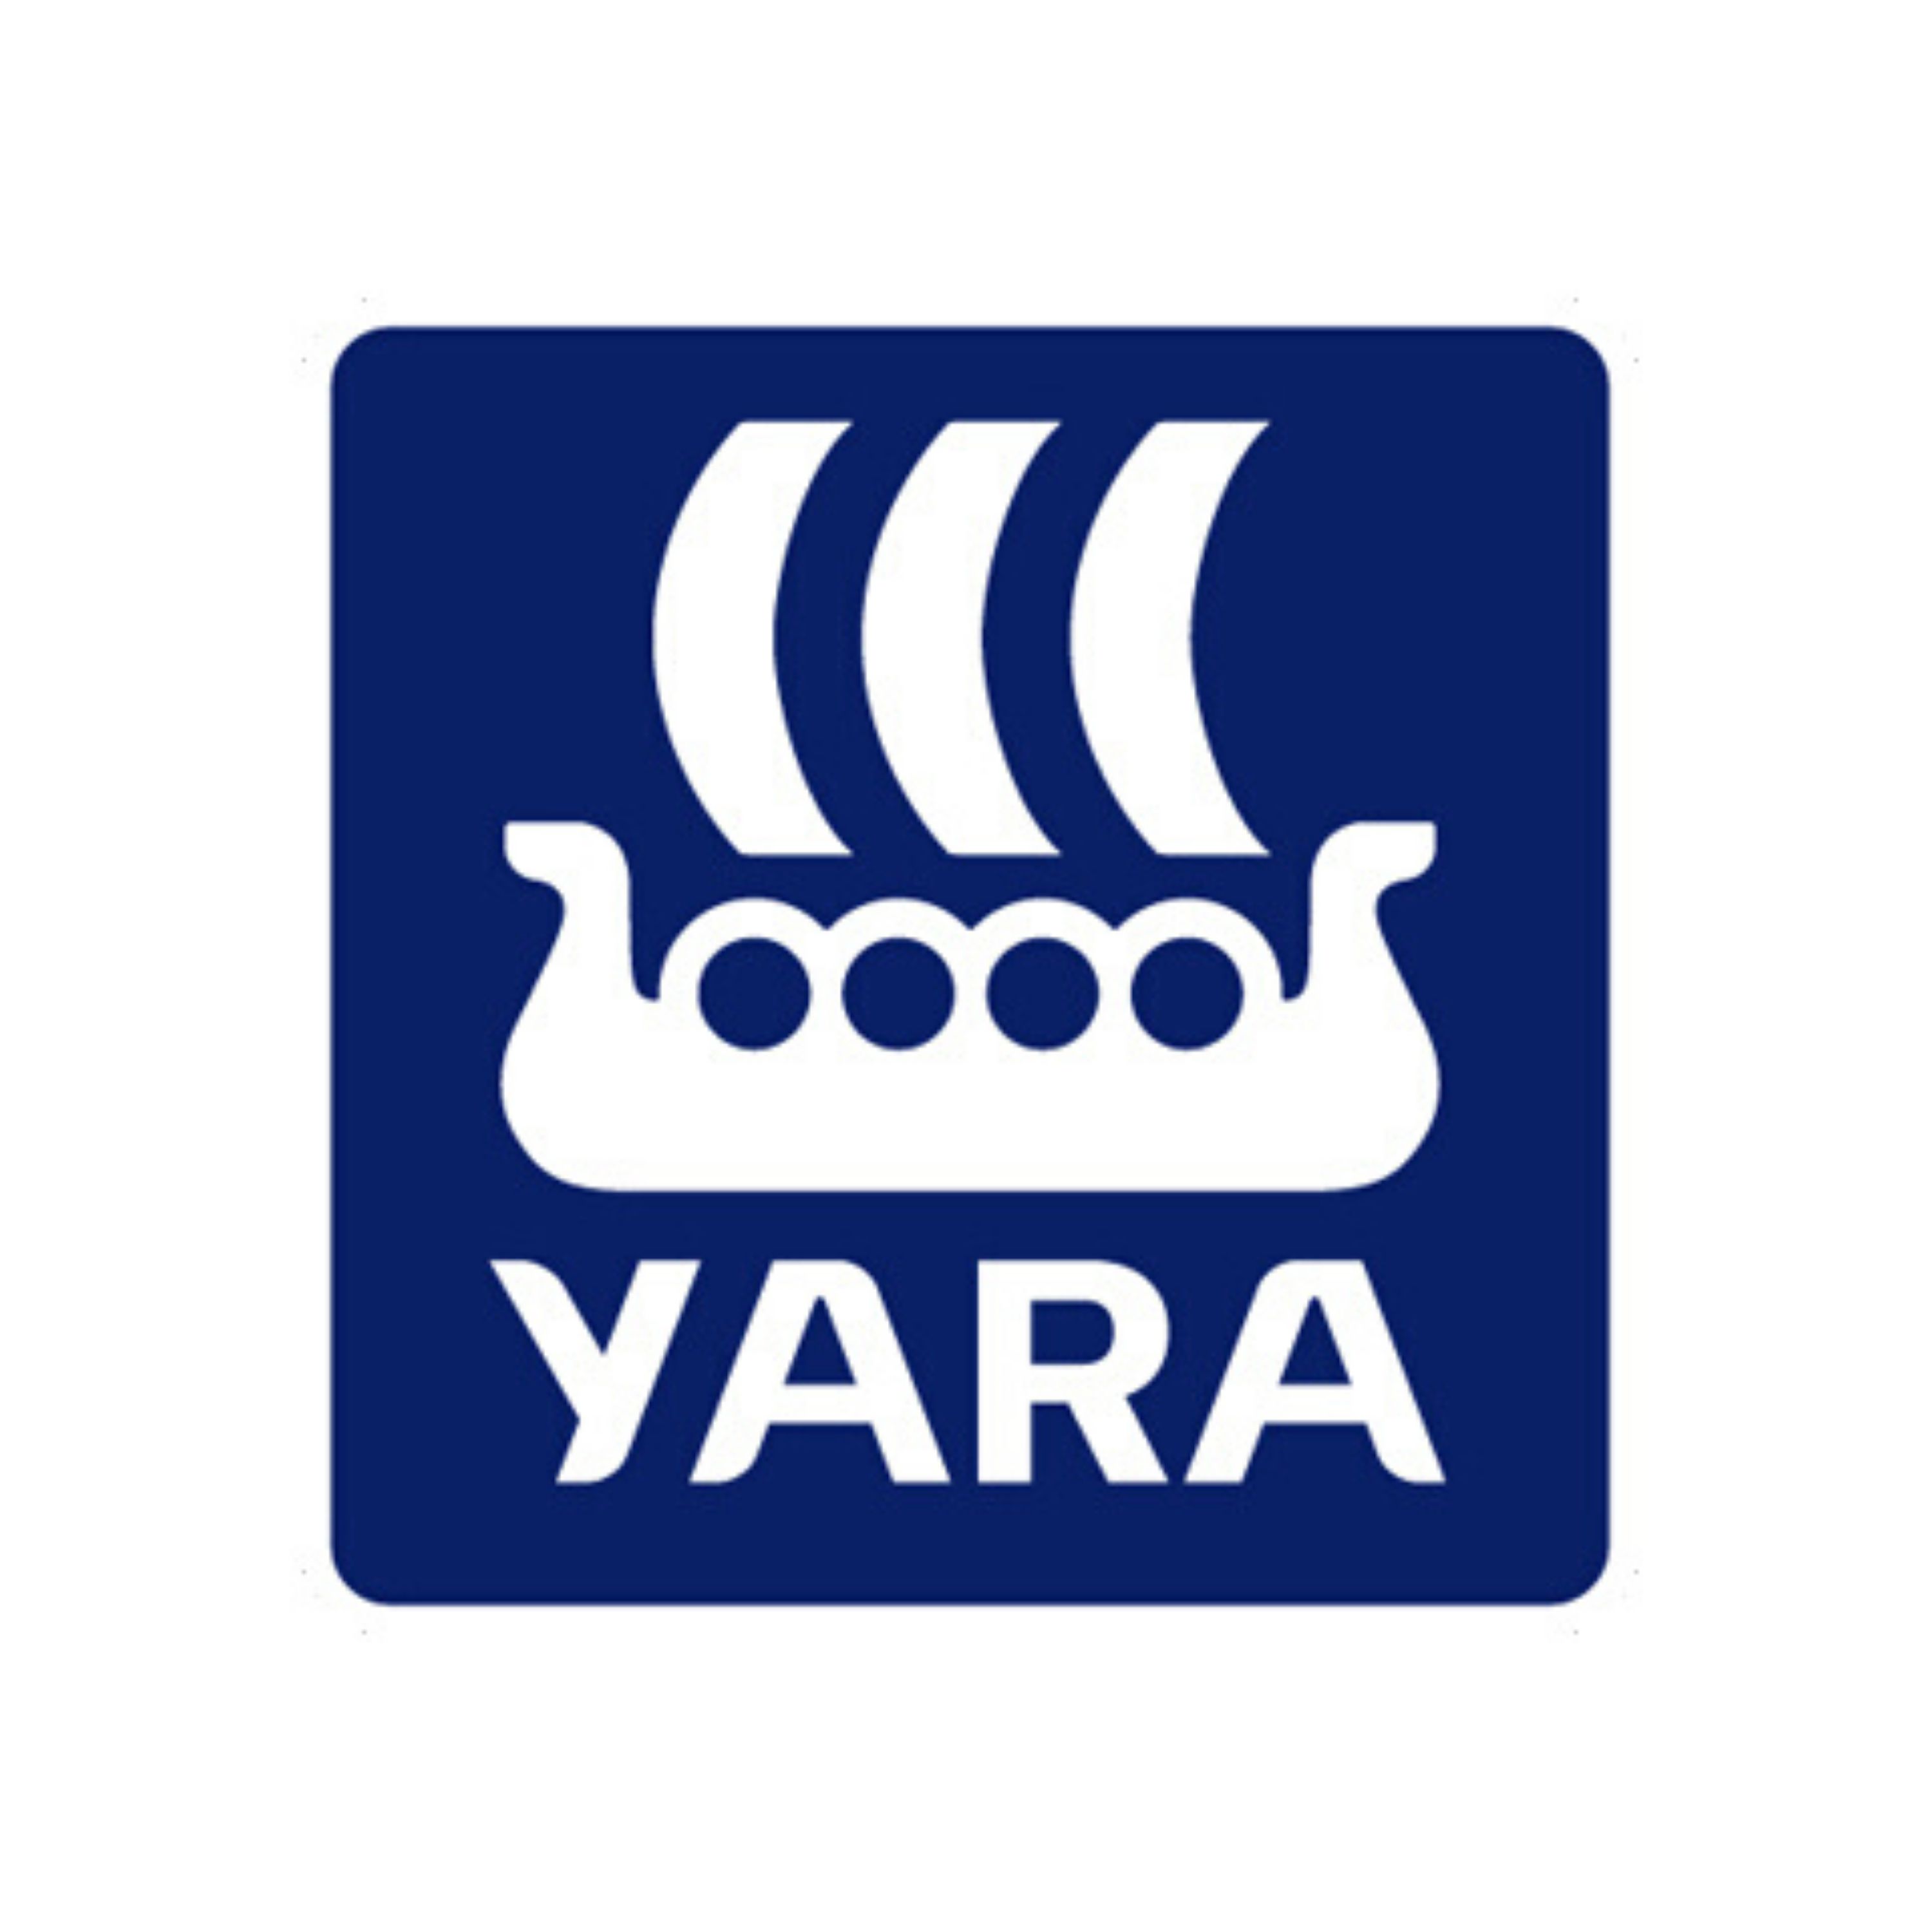 Yara Tip - YaraLiva y YaraVita mejoran la rentabilidad de la cosecha de café